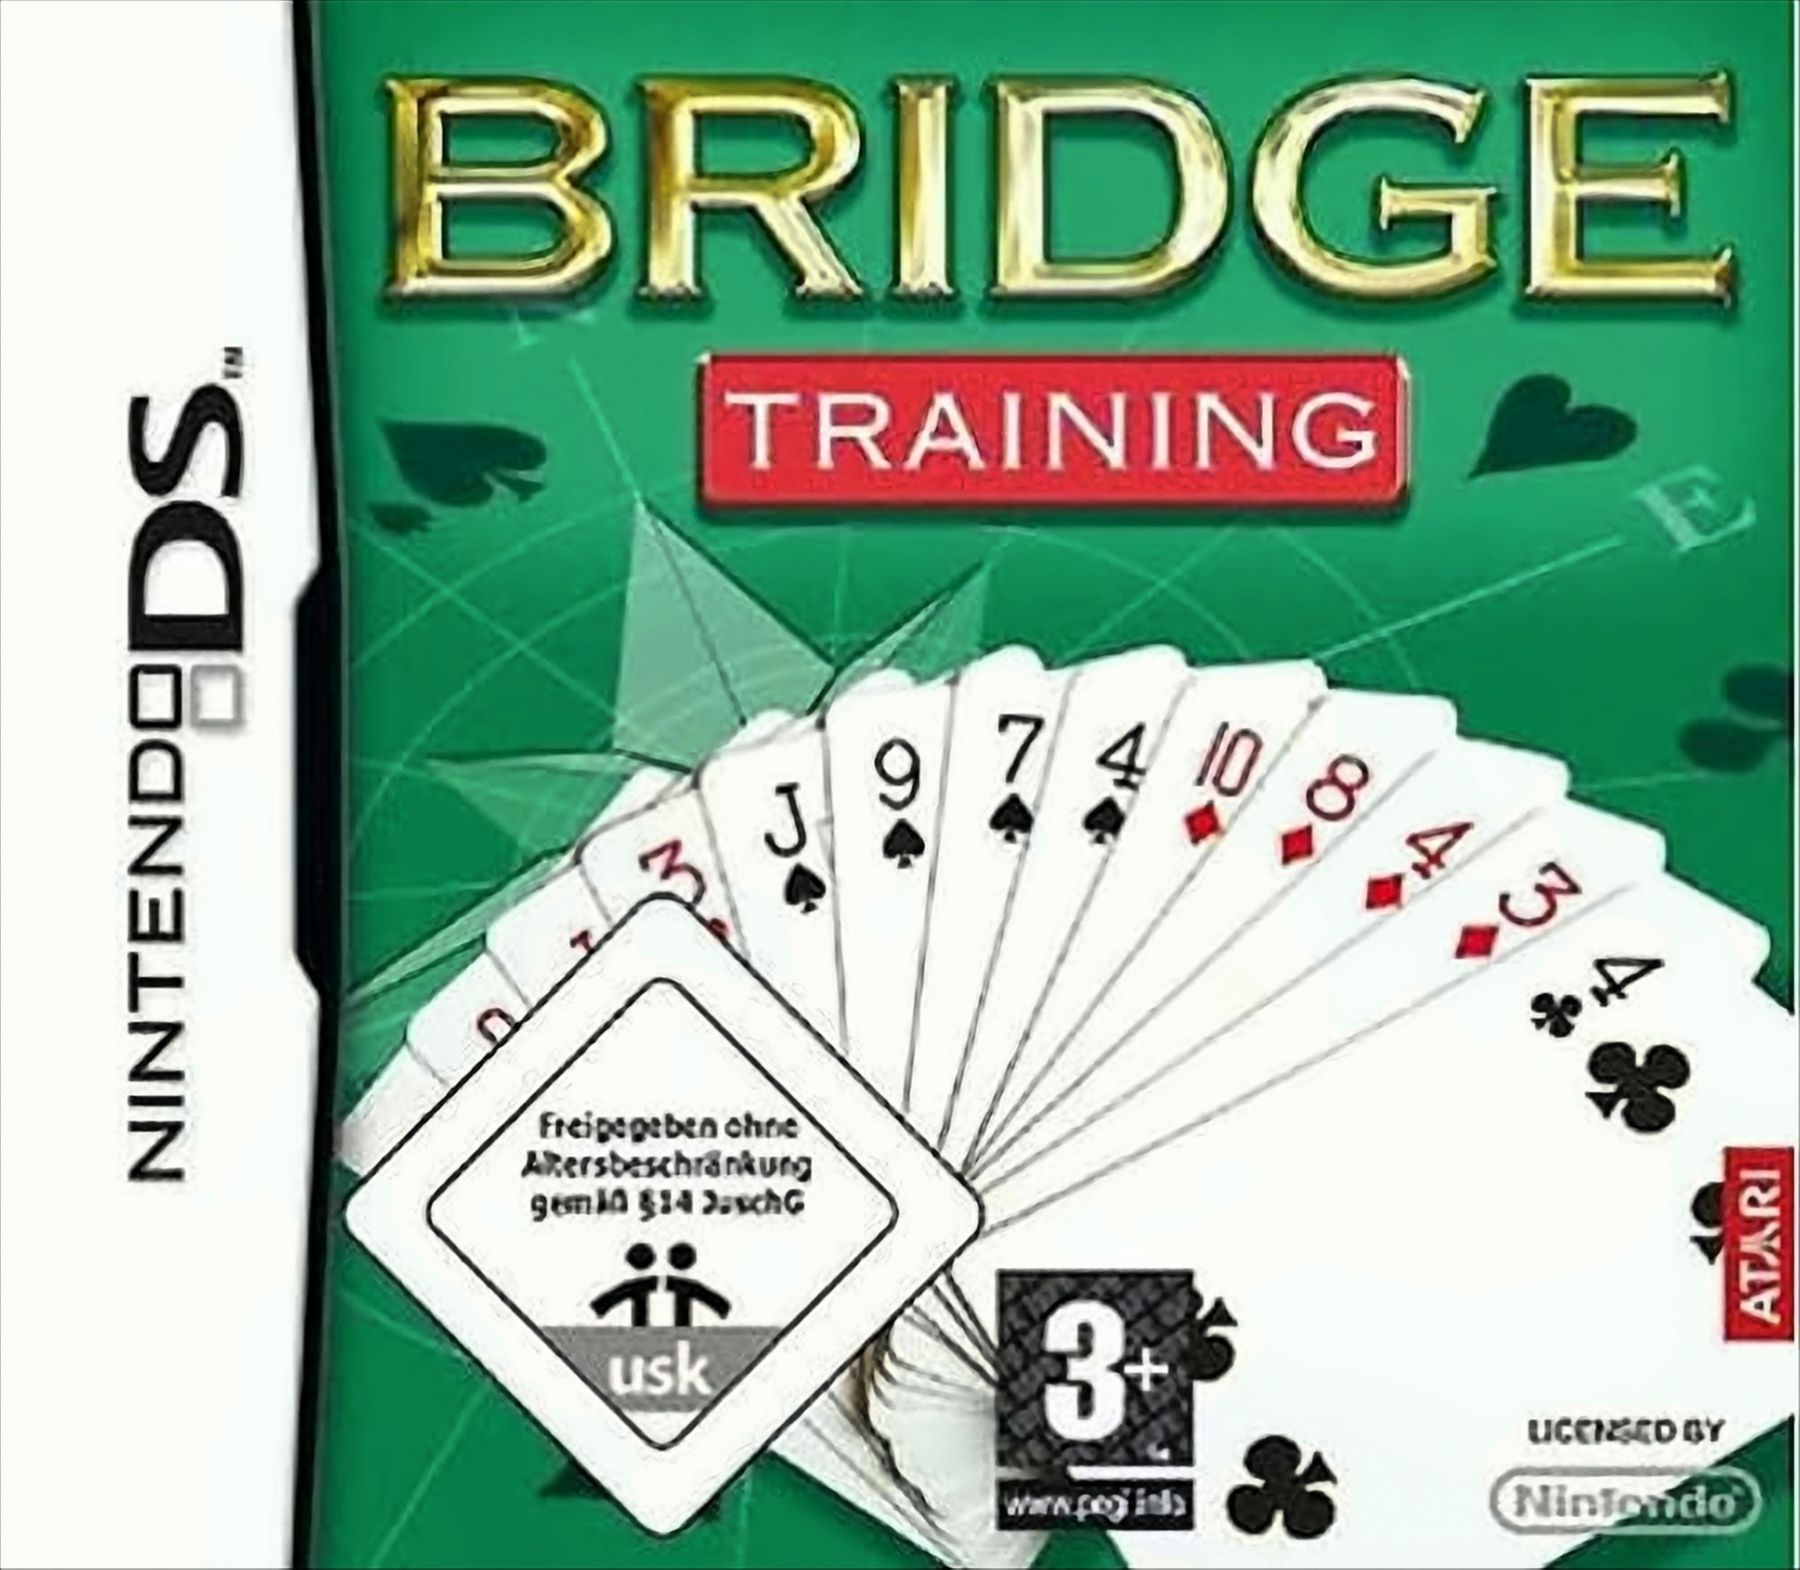 Bridge Training von Atari